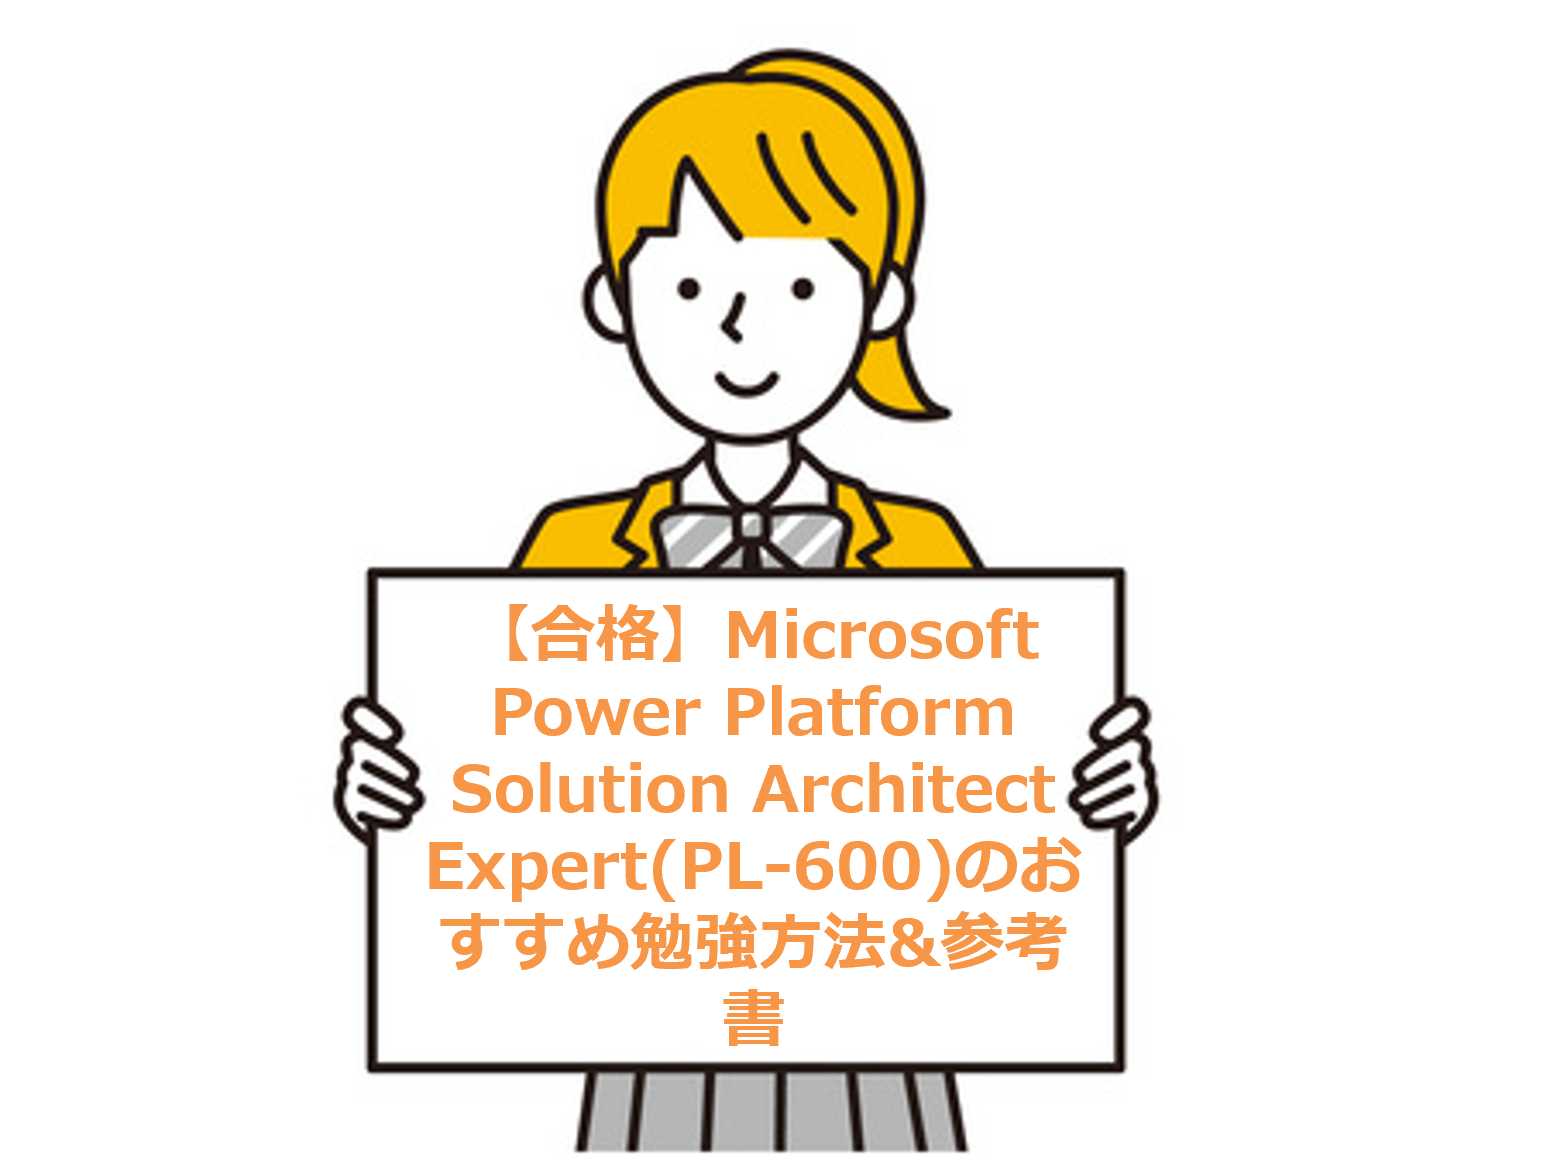 【合格】Microsoft Power Platform Solution Architect Expert(PL-600)のおすすめ勉強方法&参考書